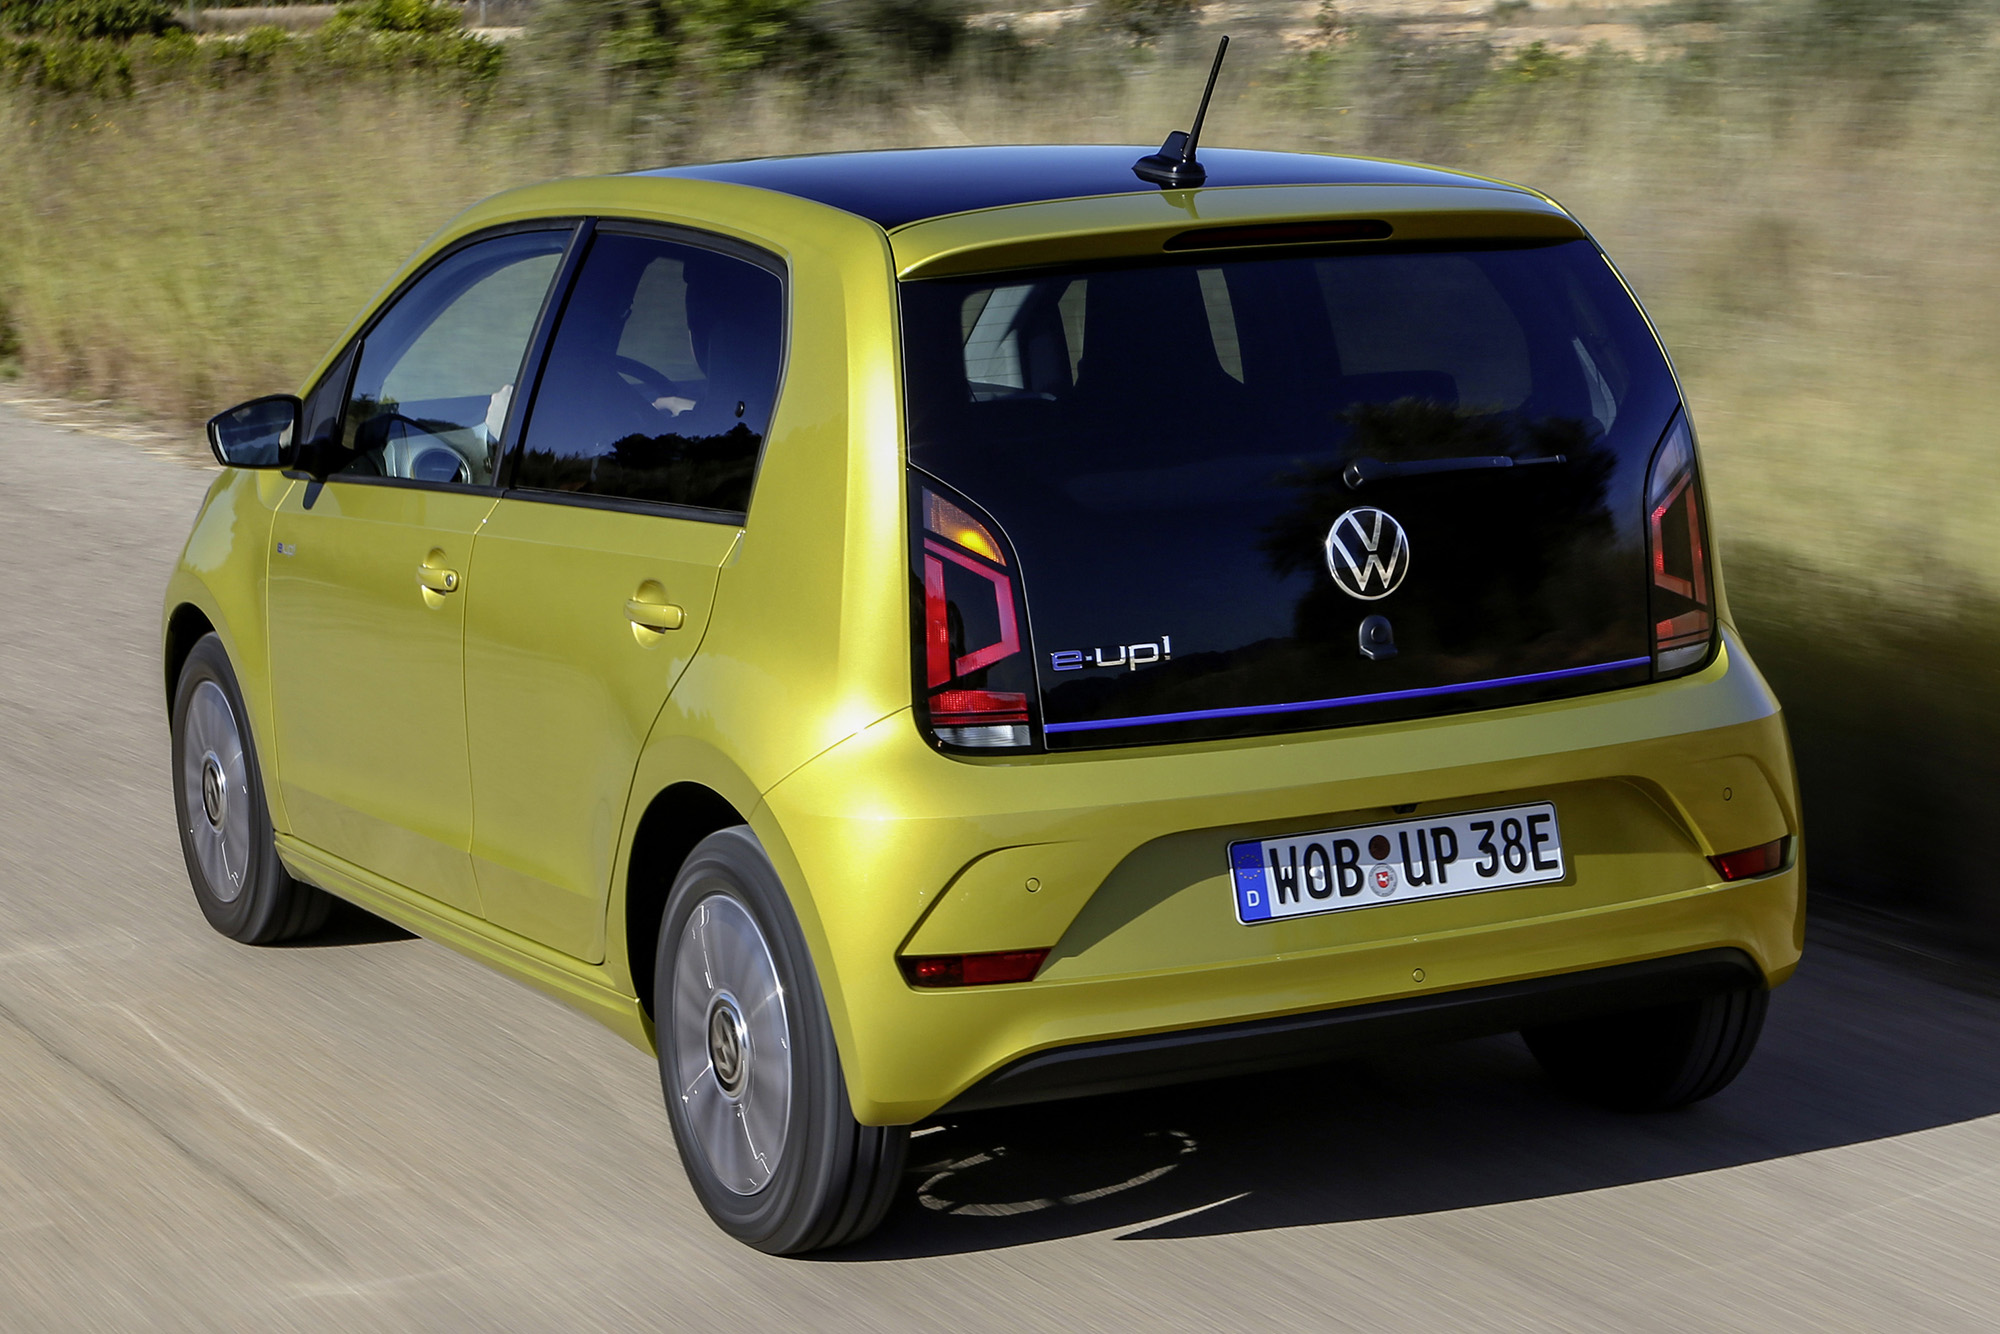 VW e-Up! amarelo visto de trás